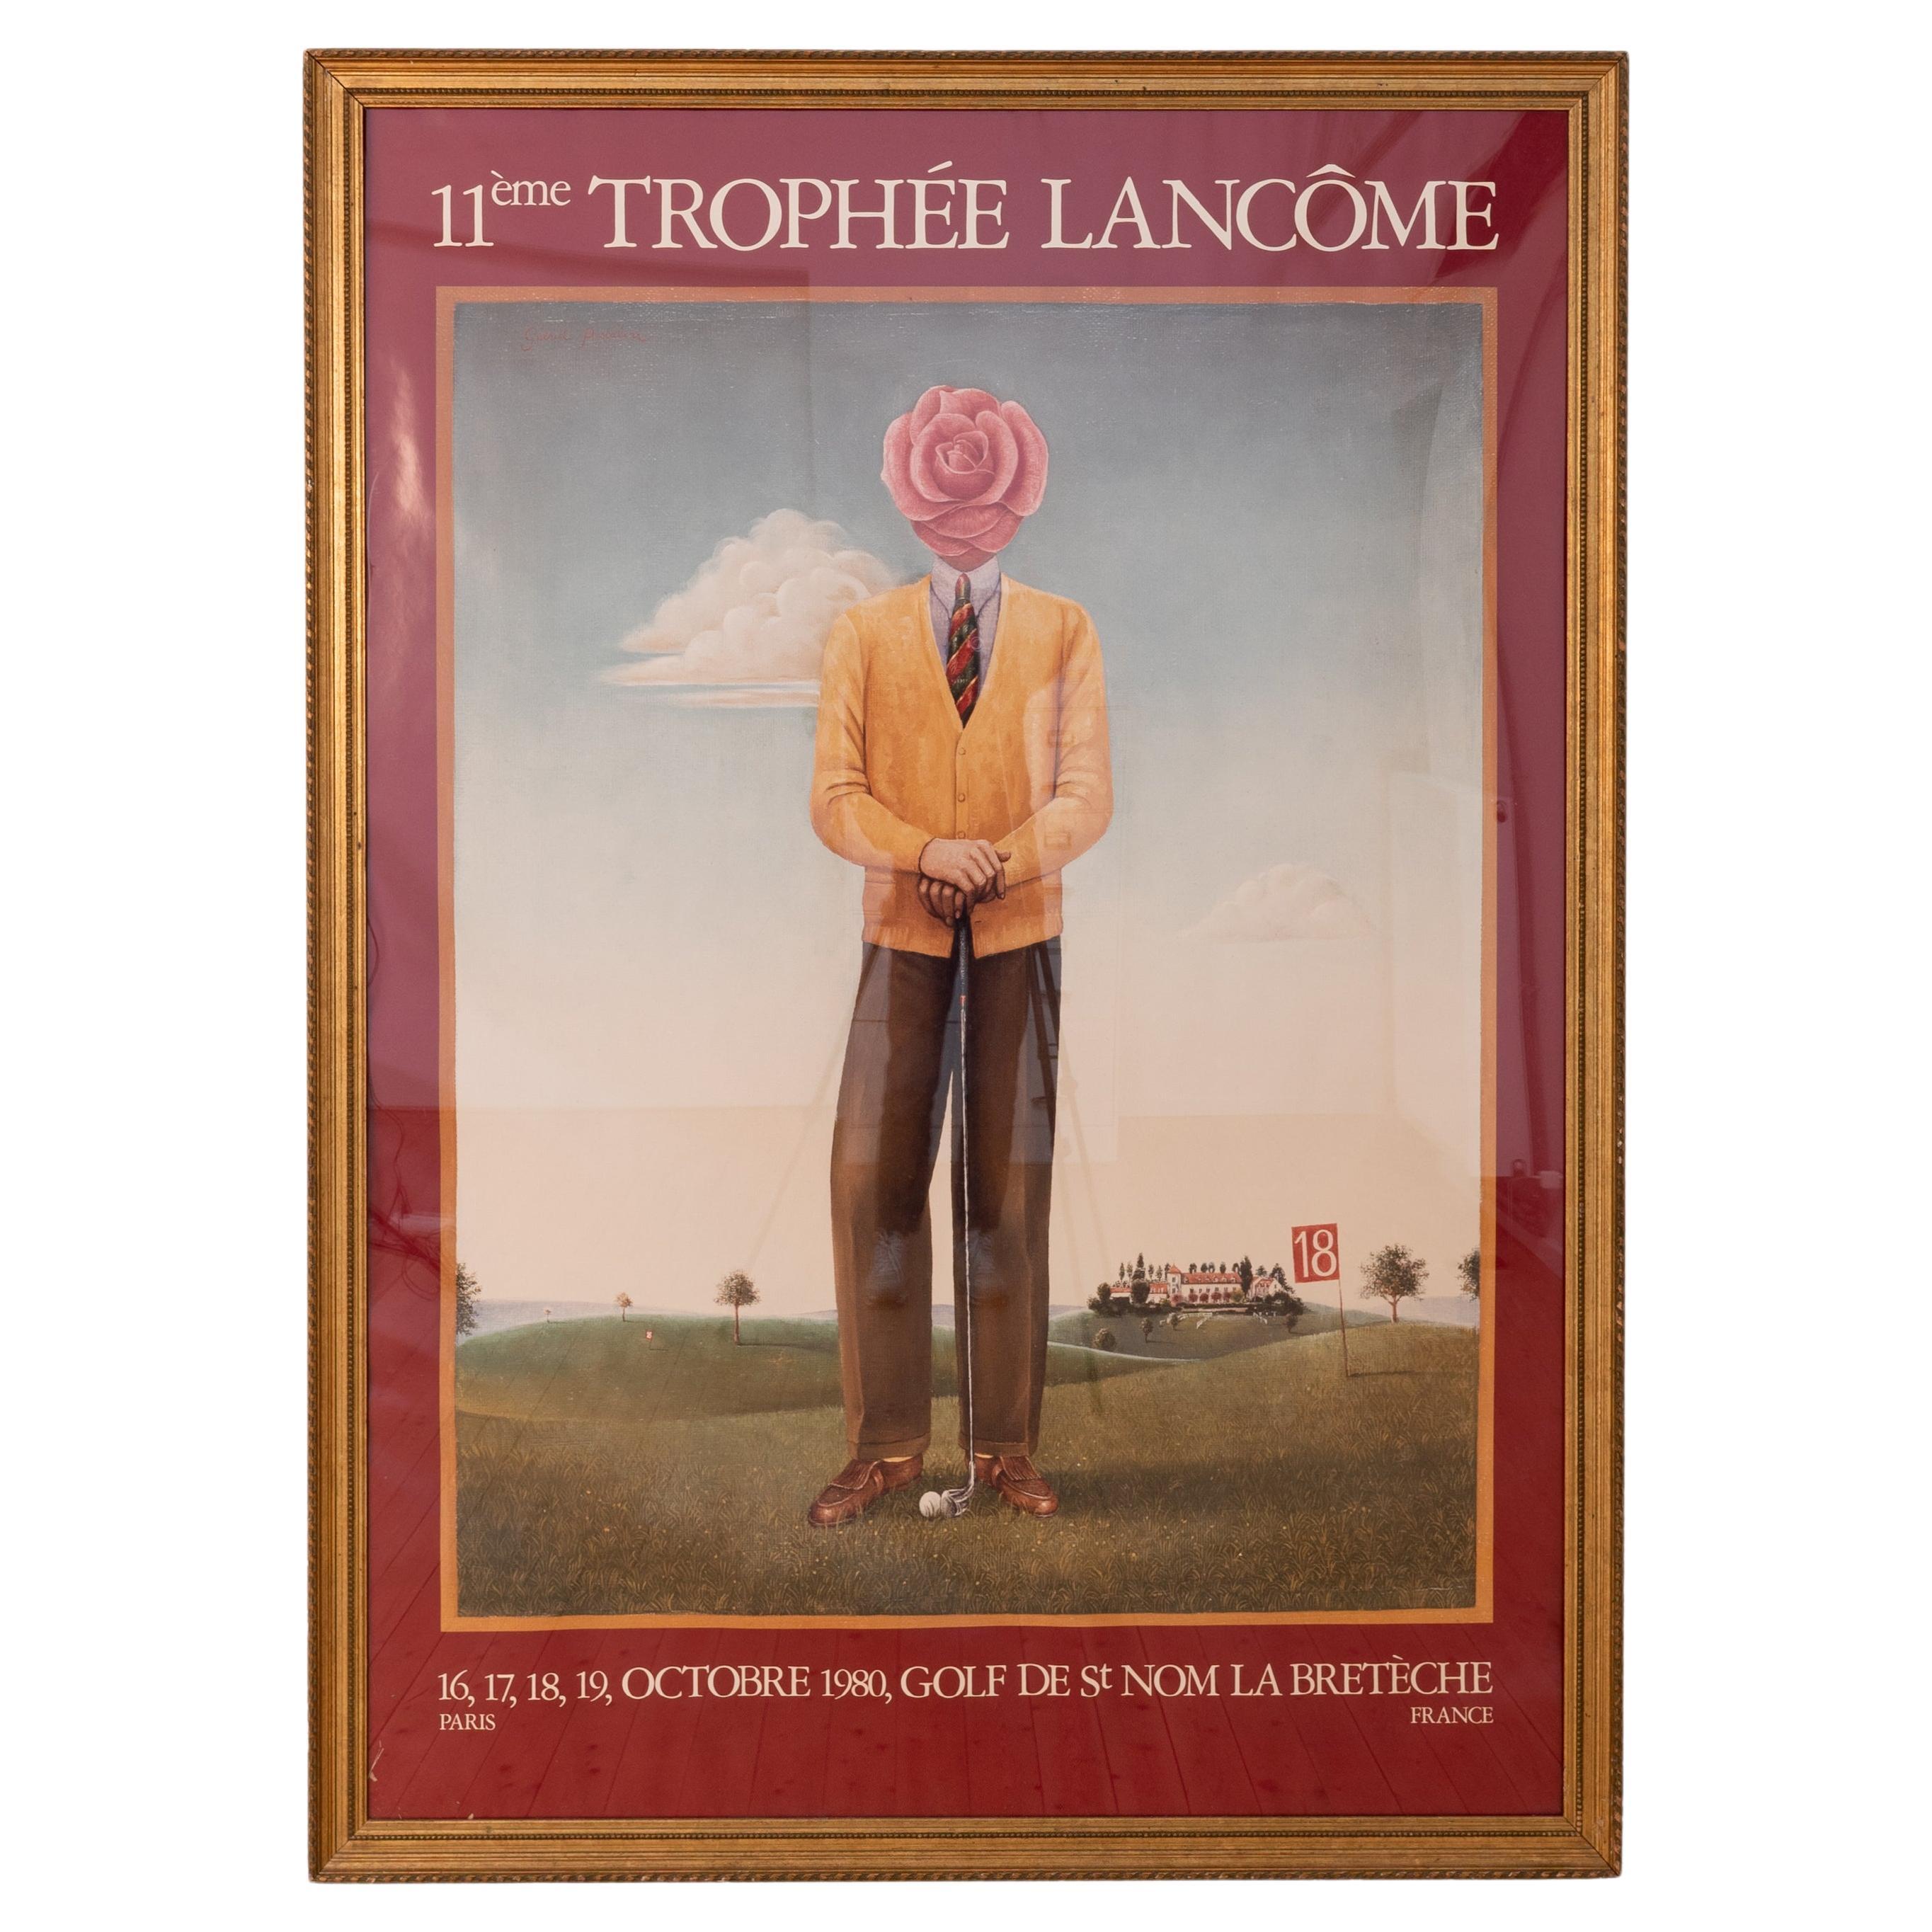 Xxl Original Poster 11th French Golf Tournament Trophée Lancôme 'La Bretèche'